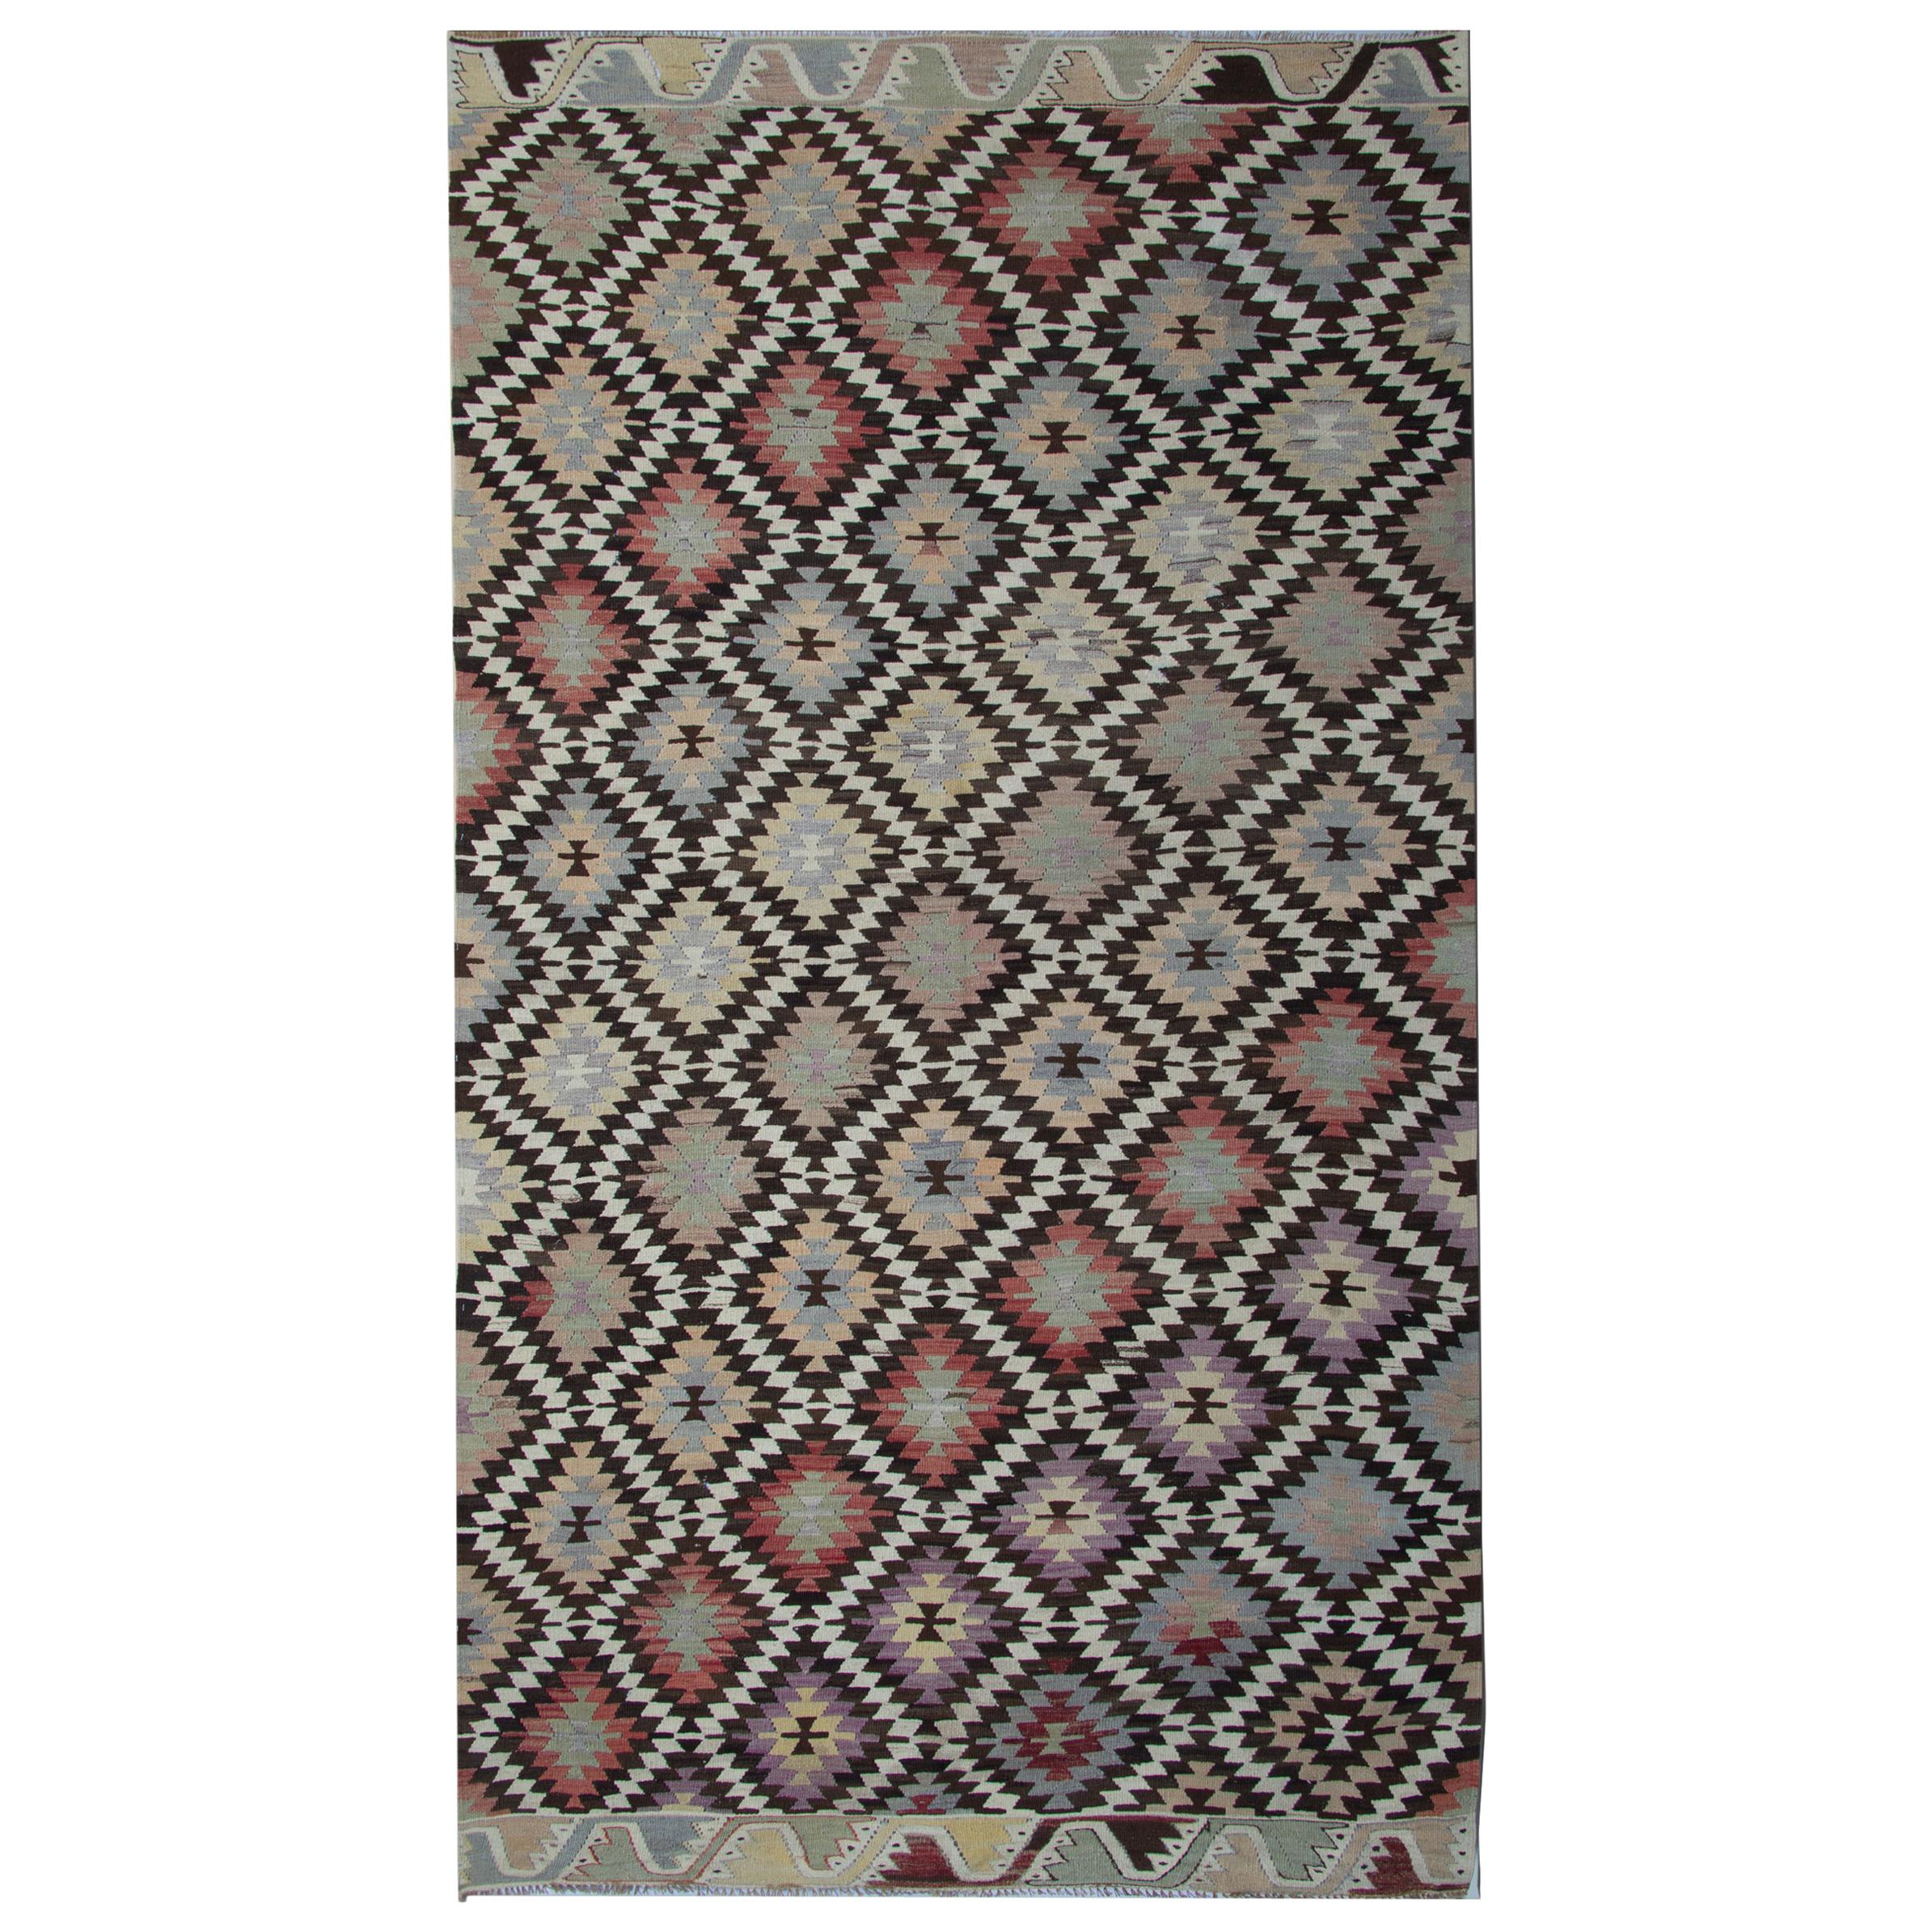 Antique Rug Handmade Carpet Turkish Kilim Rugs Oriental Rugs Area